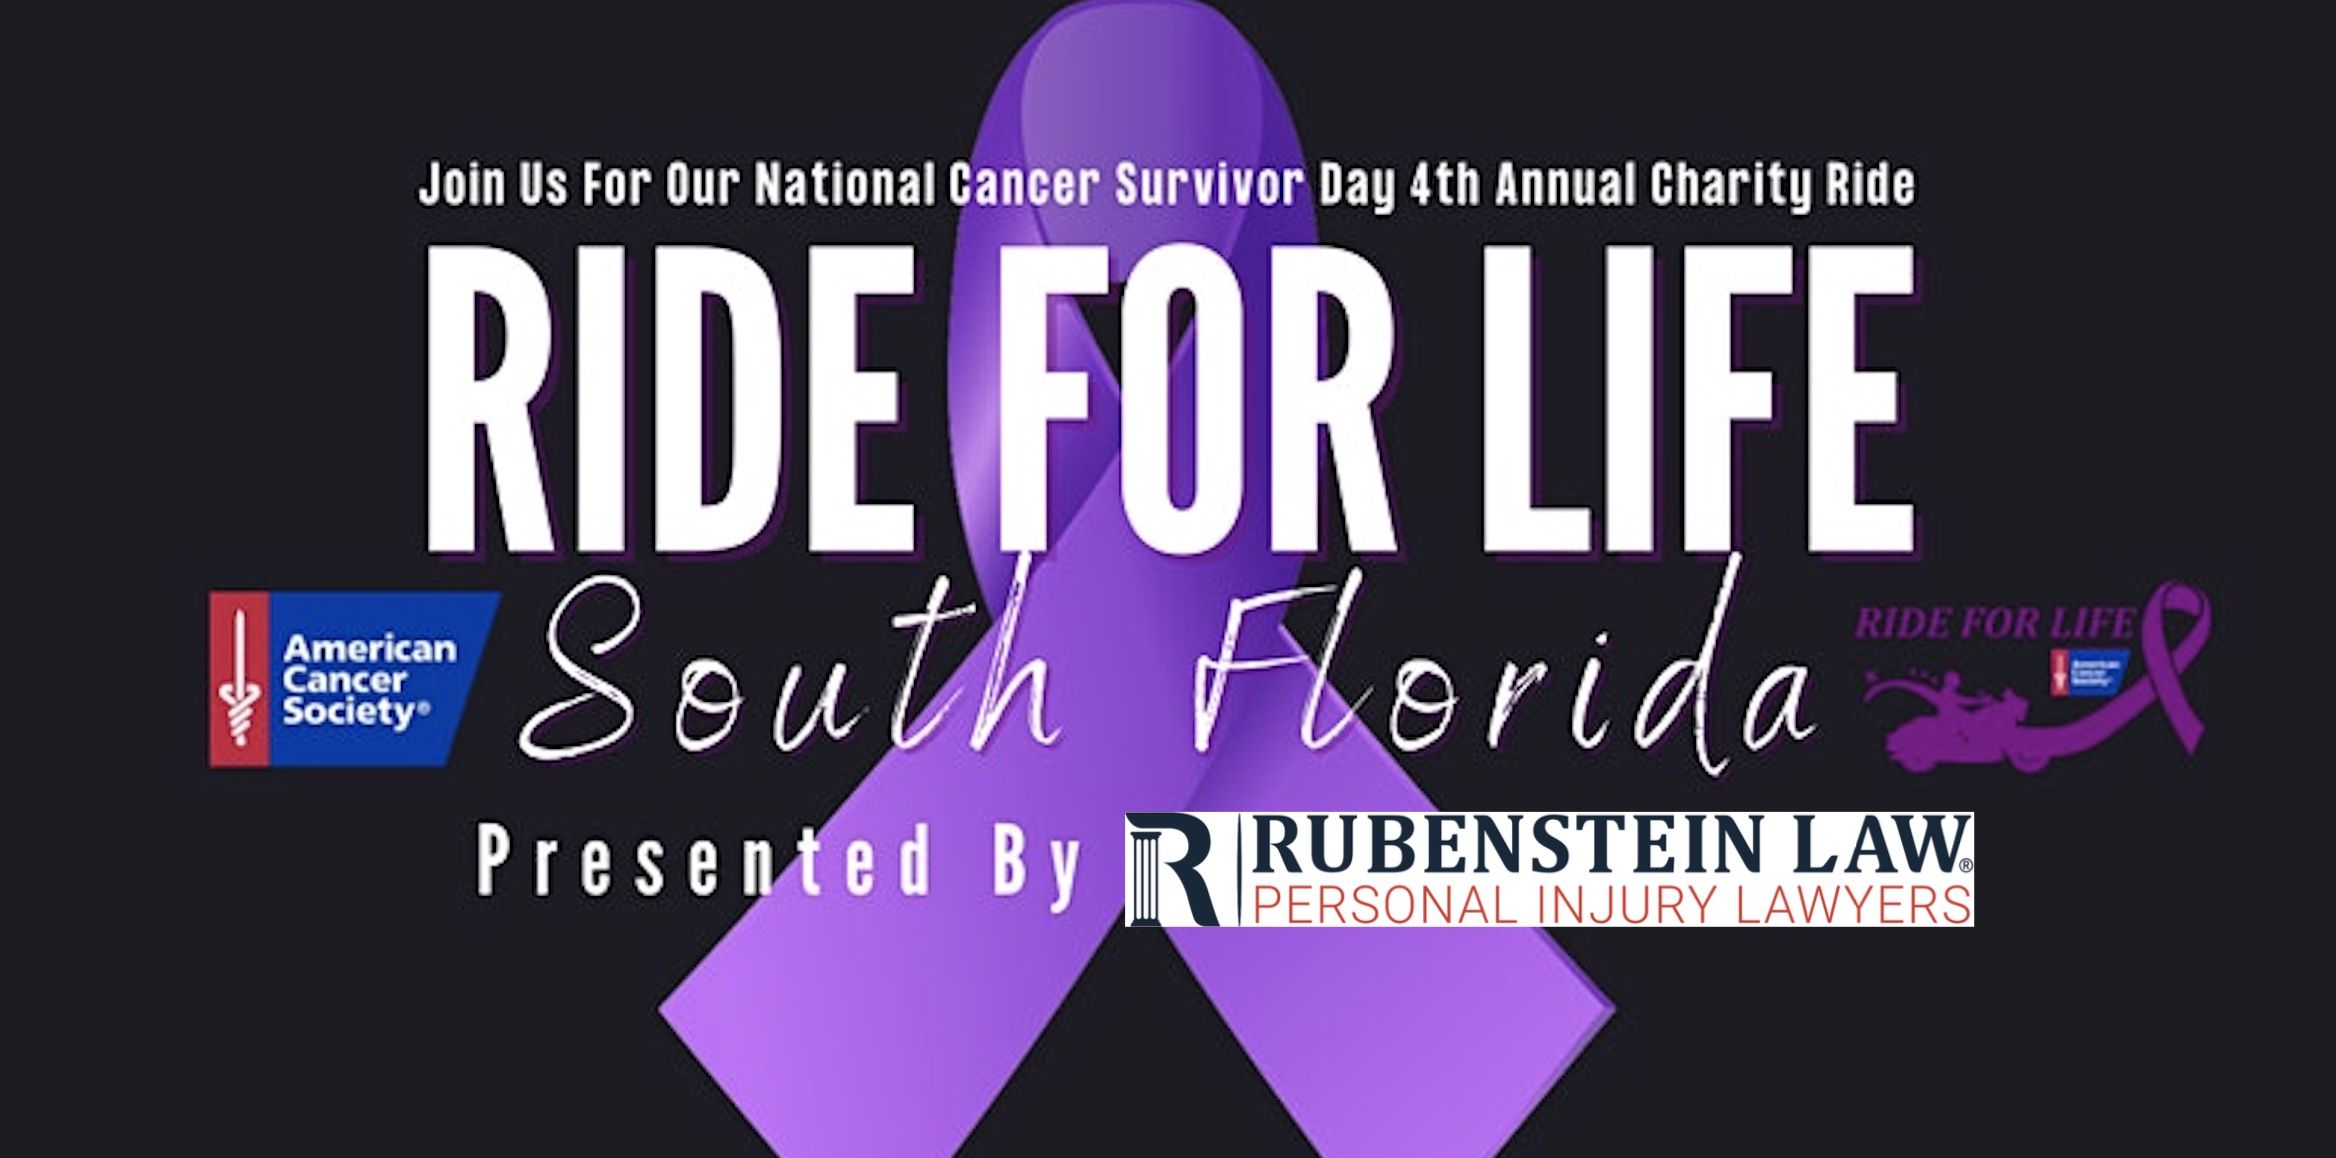 Logotipo de la cinta morada de Ride for Life patrocinado por Rubenstein Law